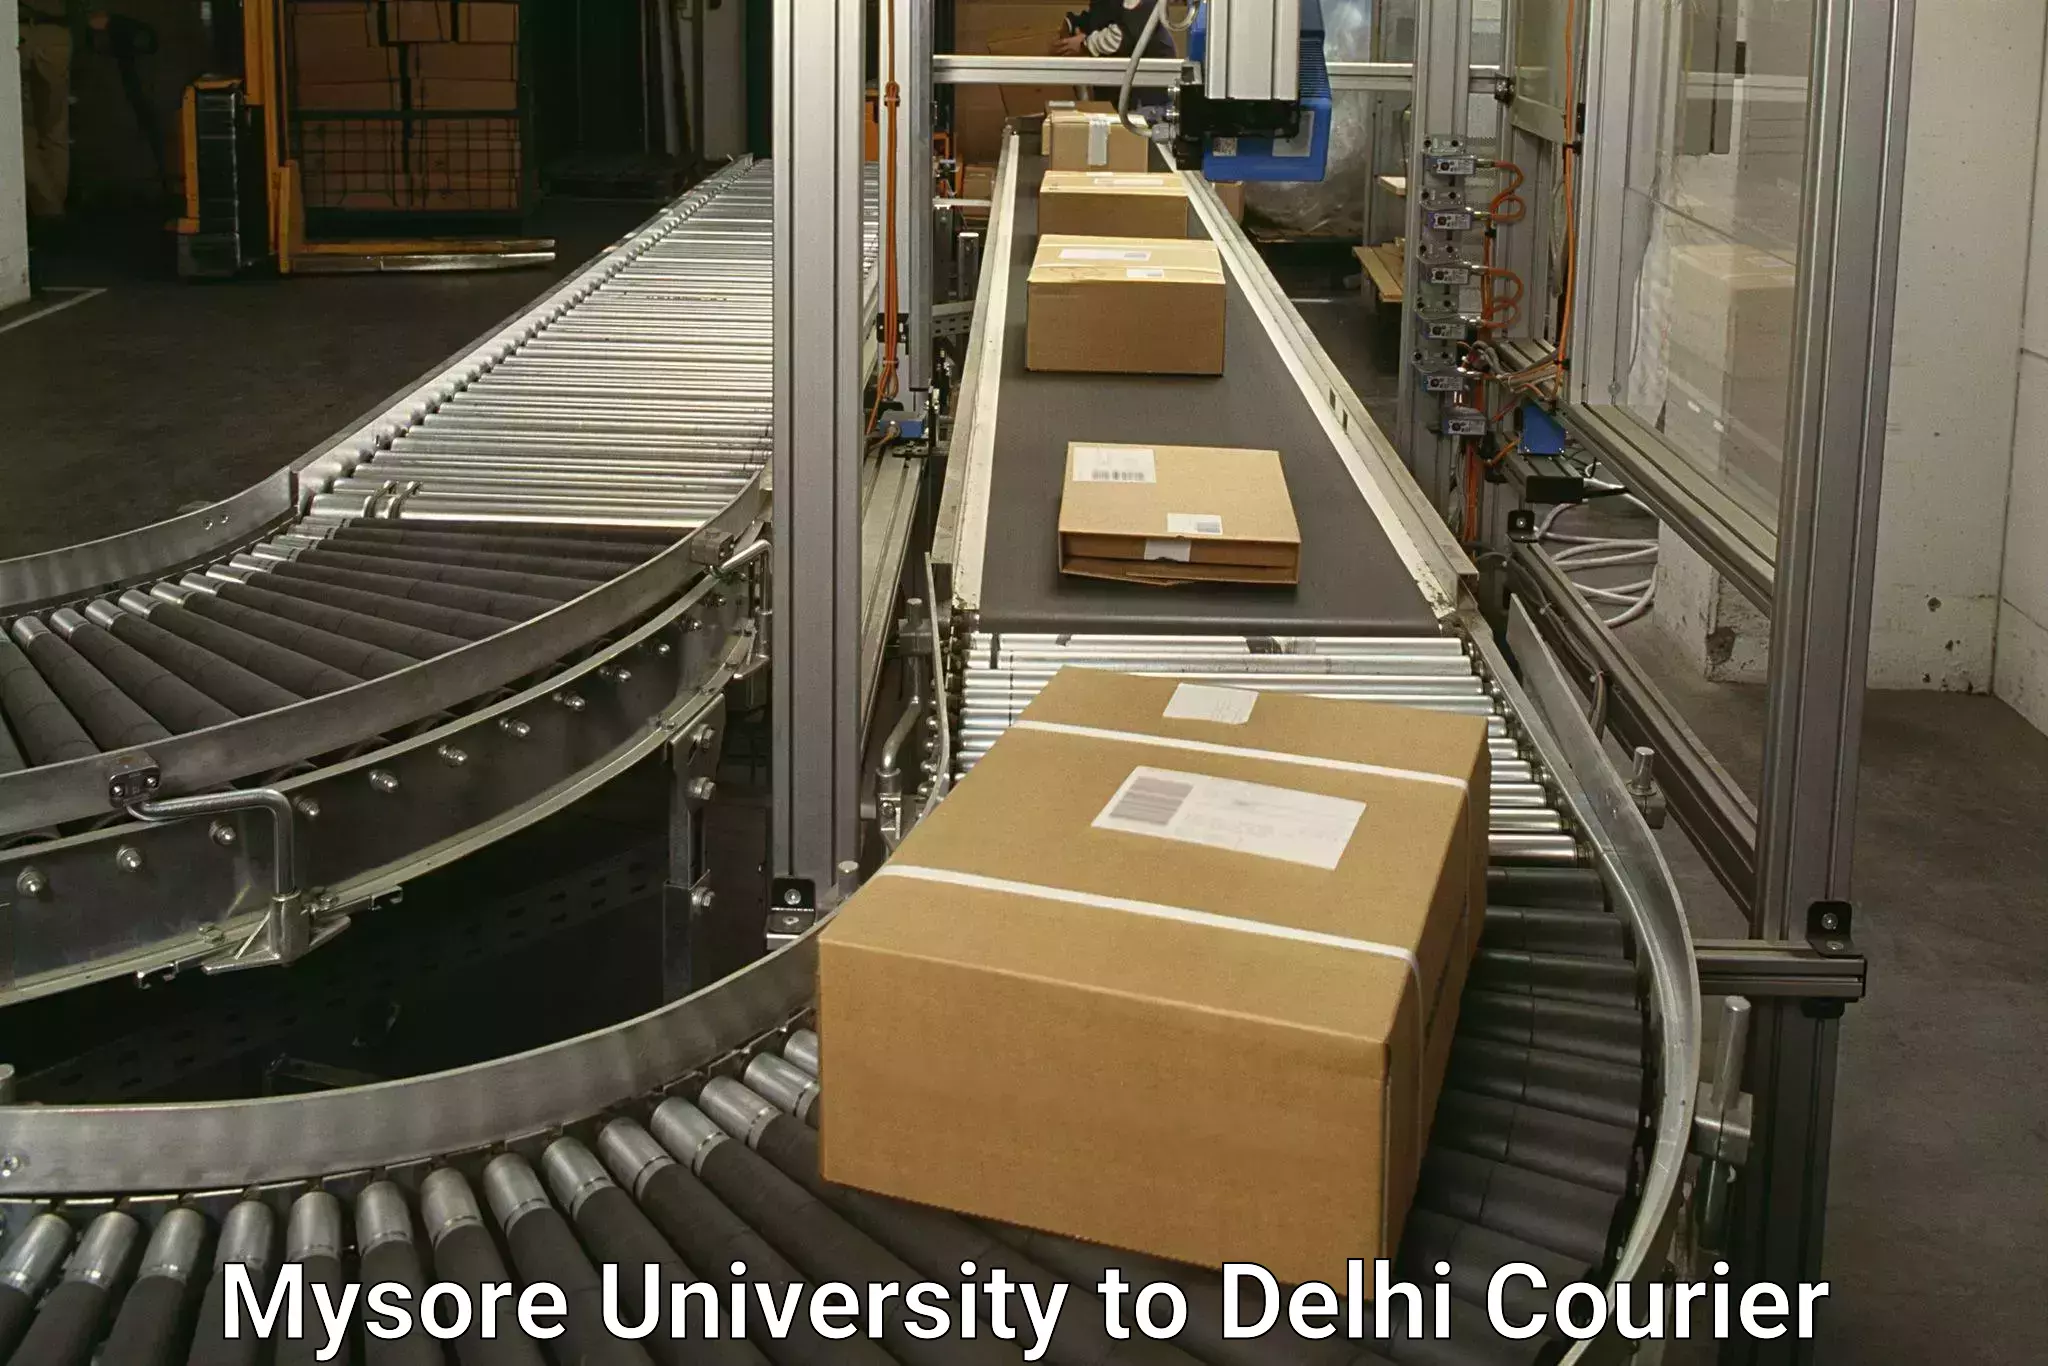 Door-to-door freight service in Mysore University to East Delhi